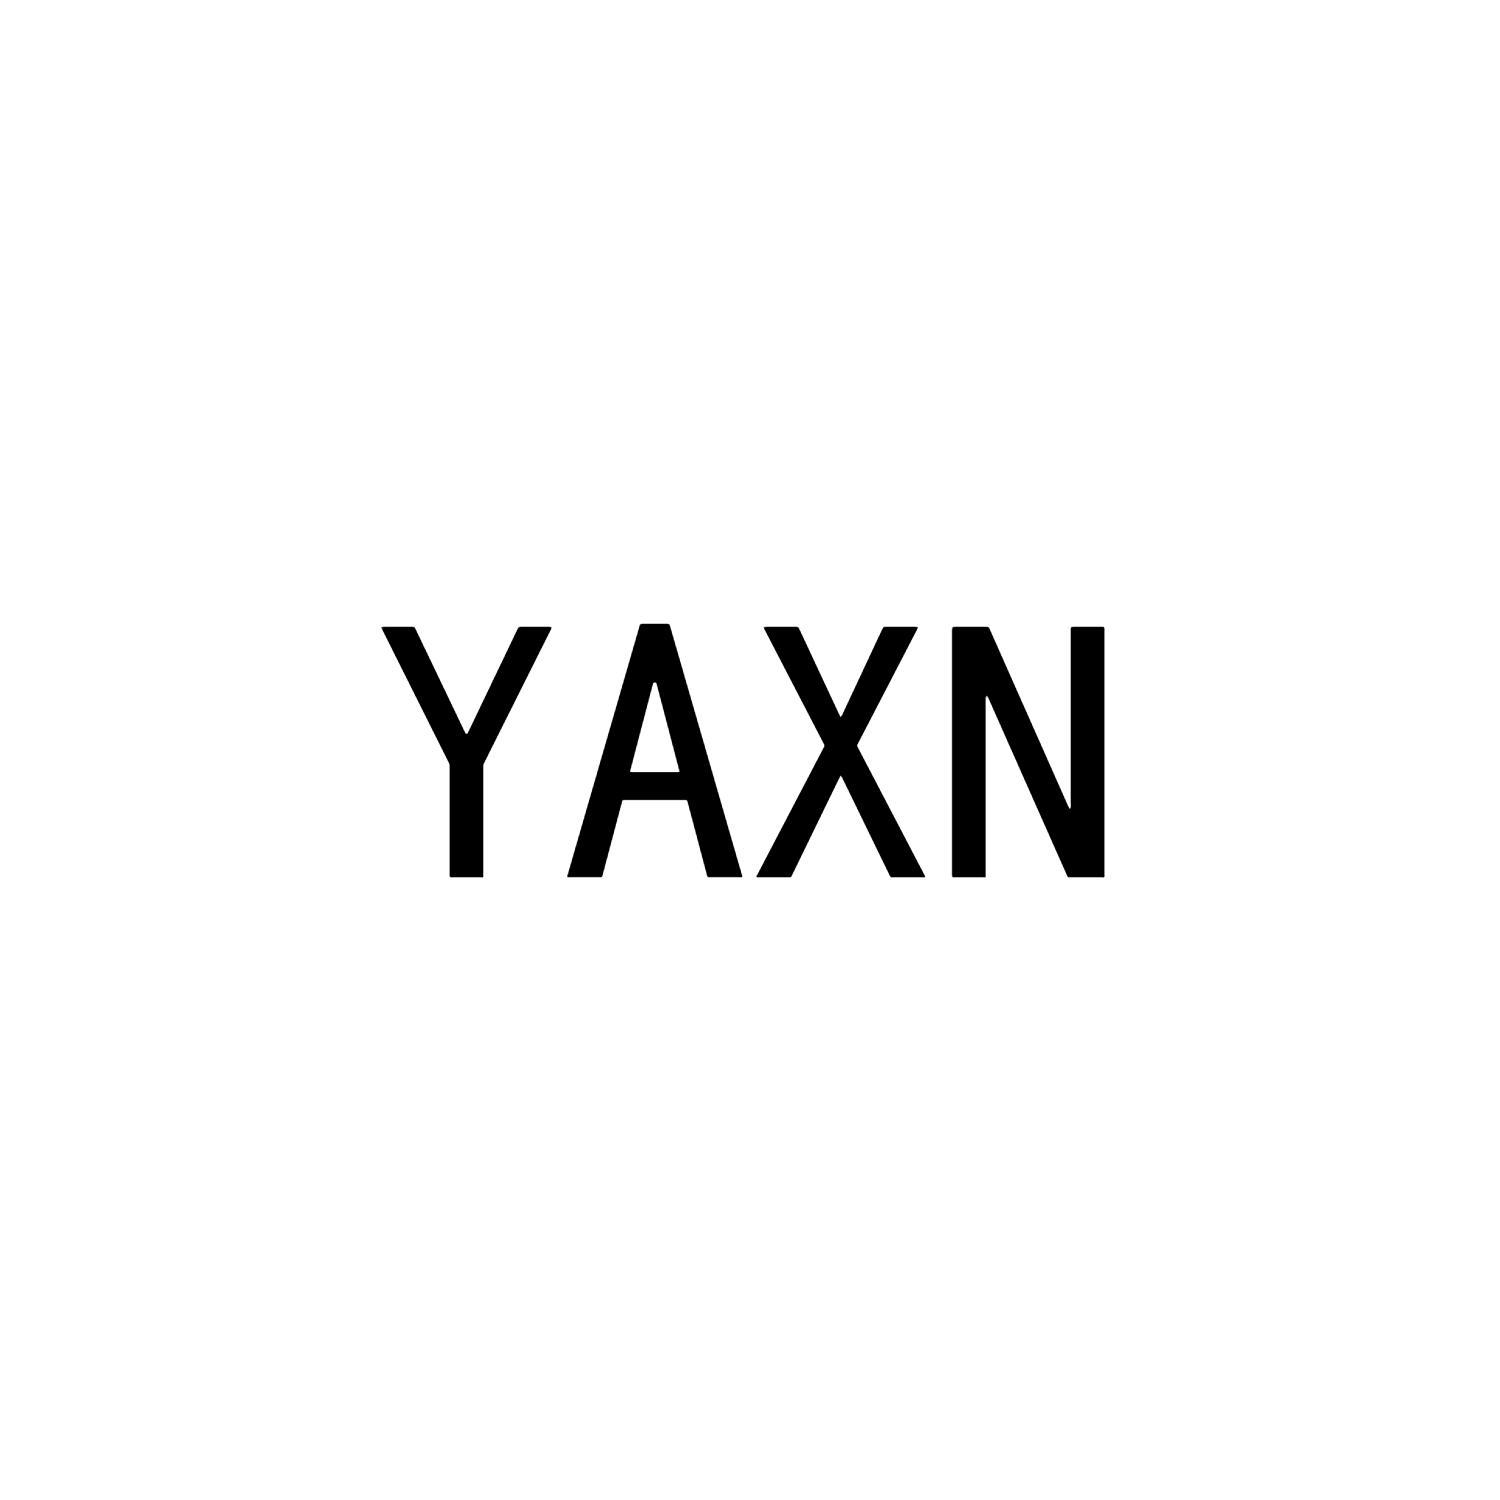 YAXN